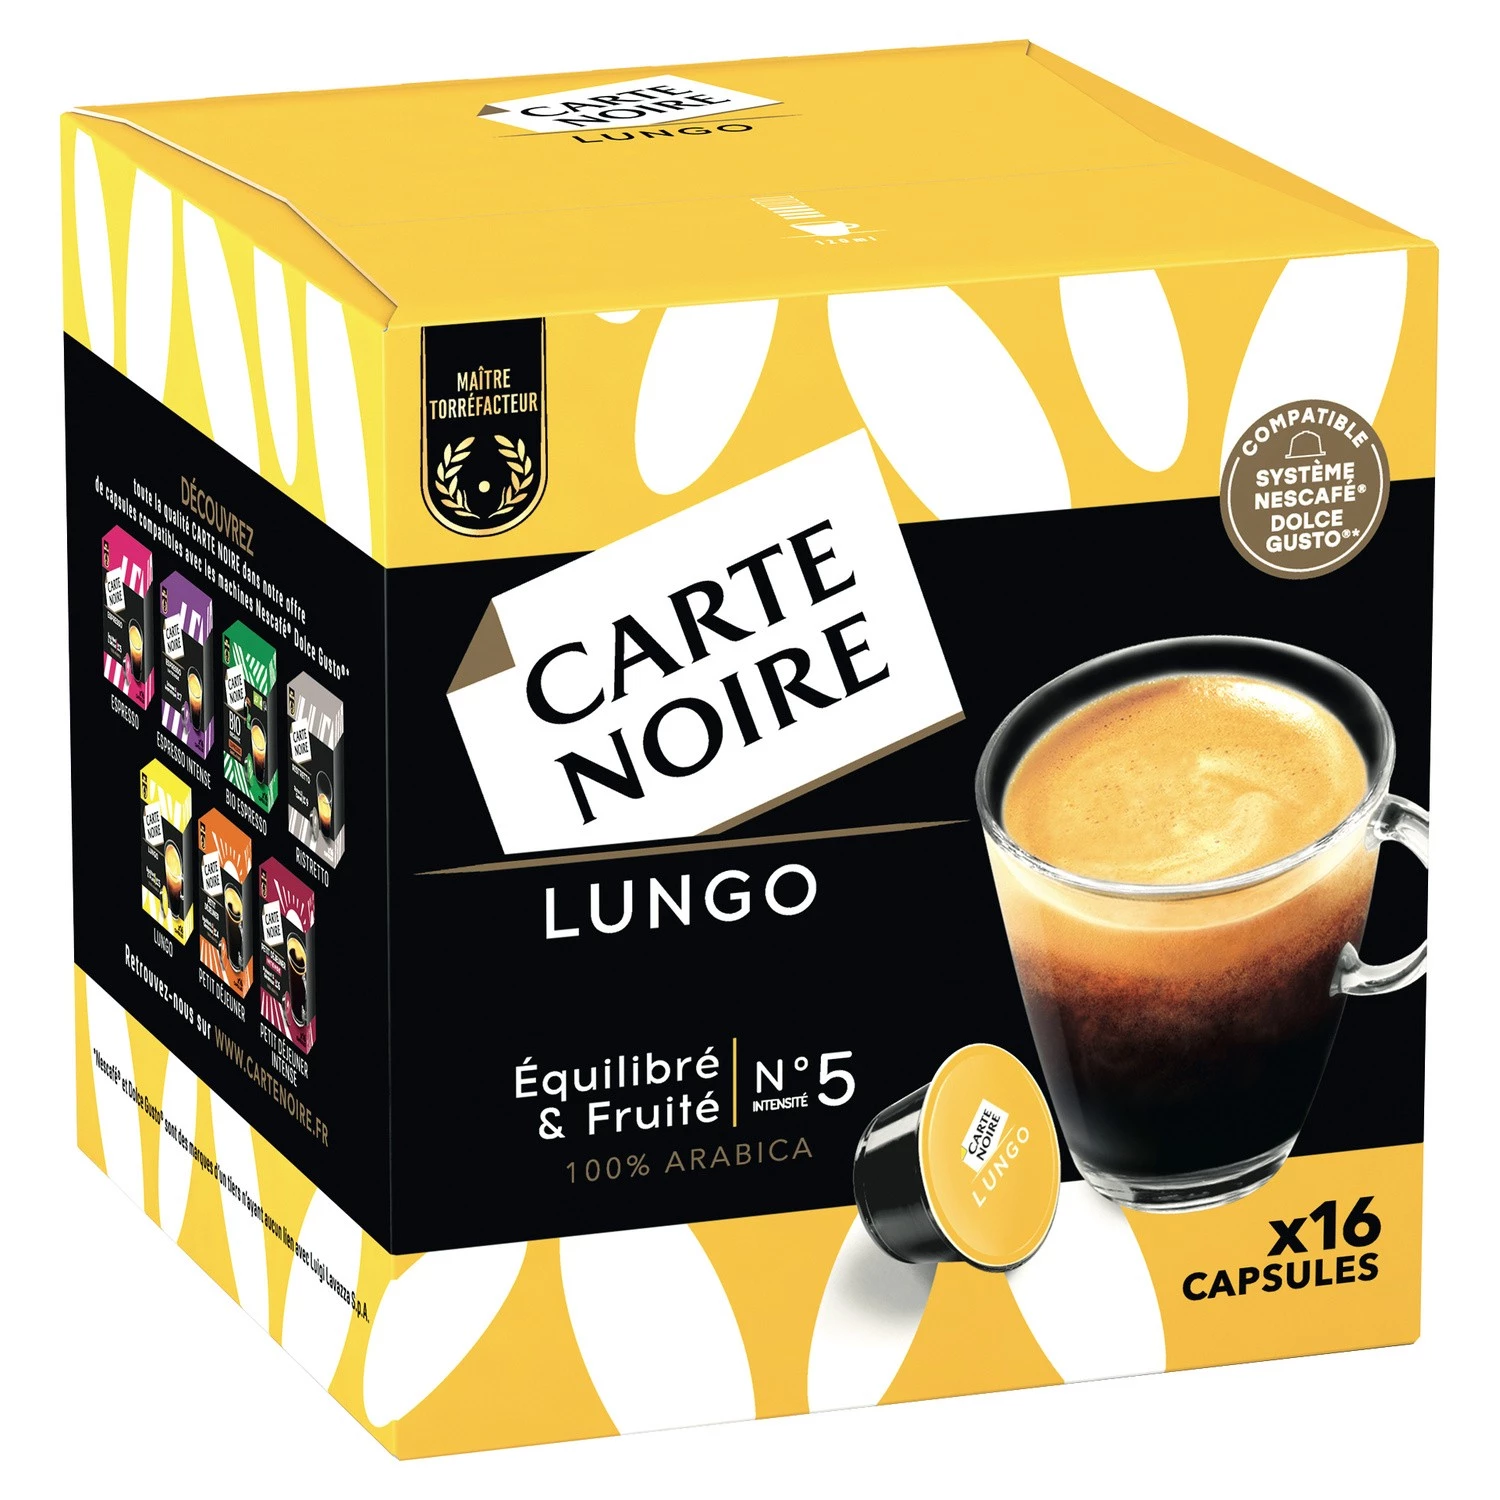 咖啡胶囊 Lungo n°5 x16 粒胶囊 128 克 - CARTE NOIRE